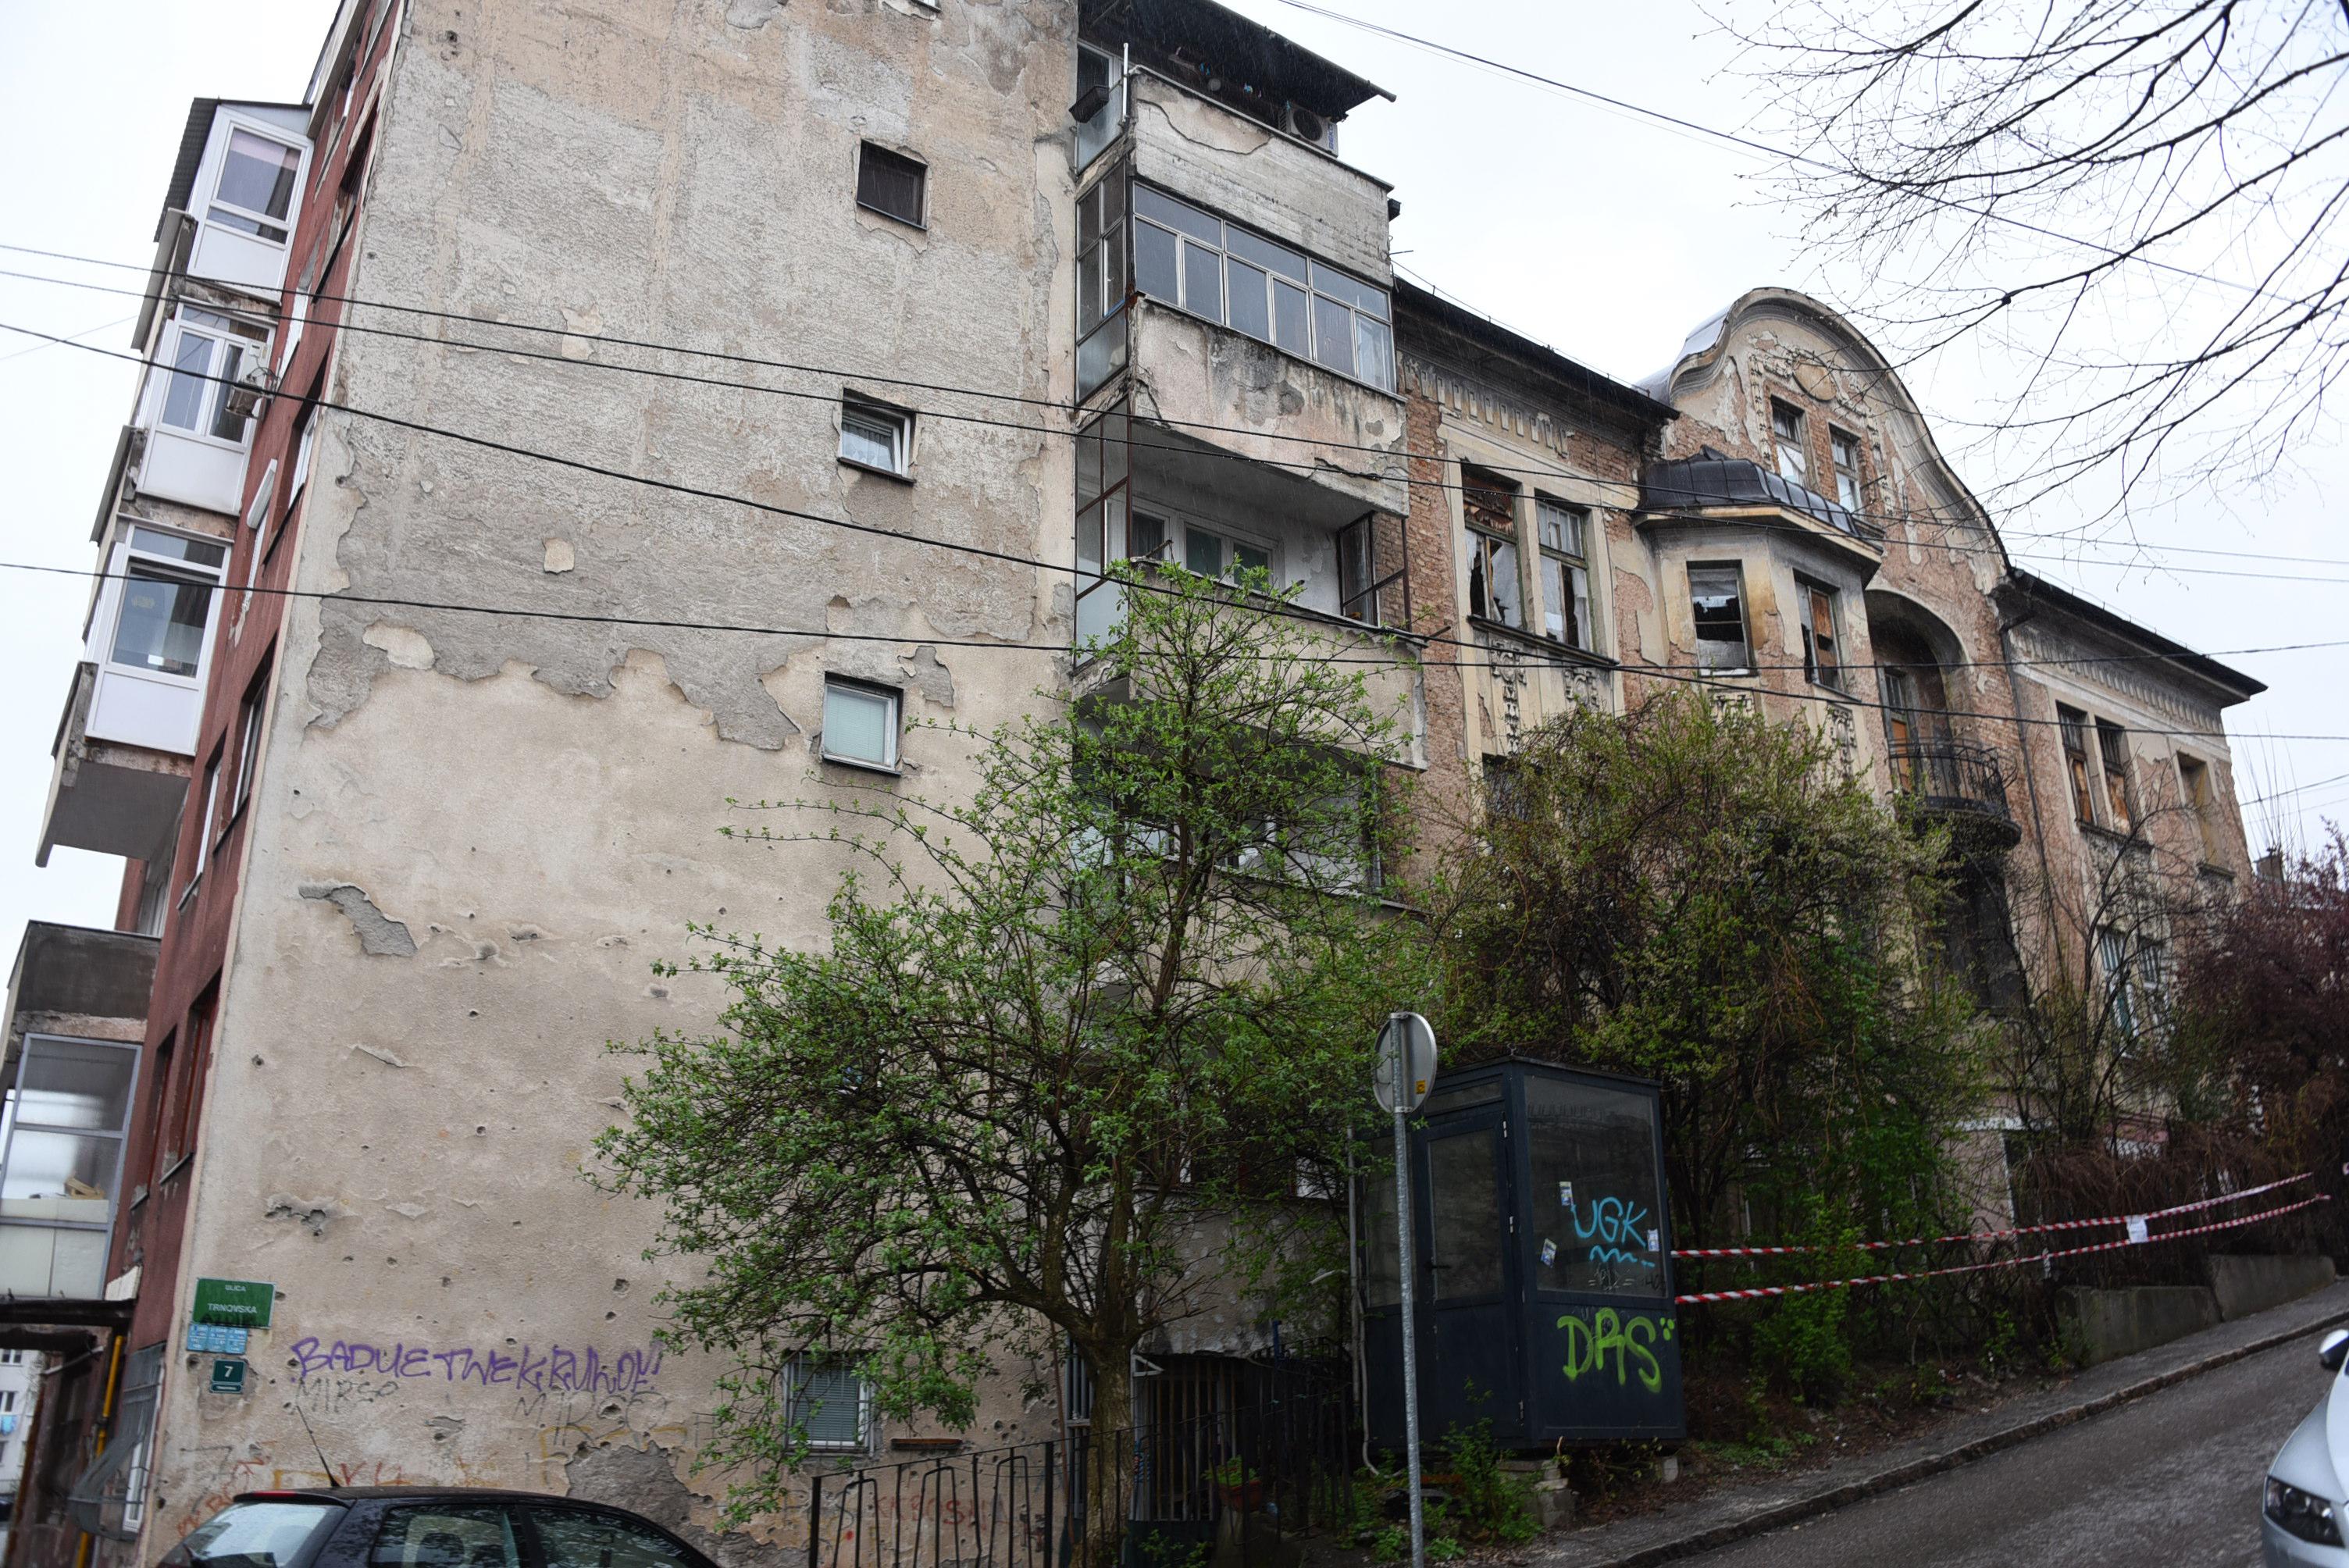 Zbog stare zgrade probleme imaju i stanari koji žive u zgradi pored - Avaz